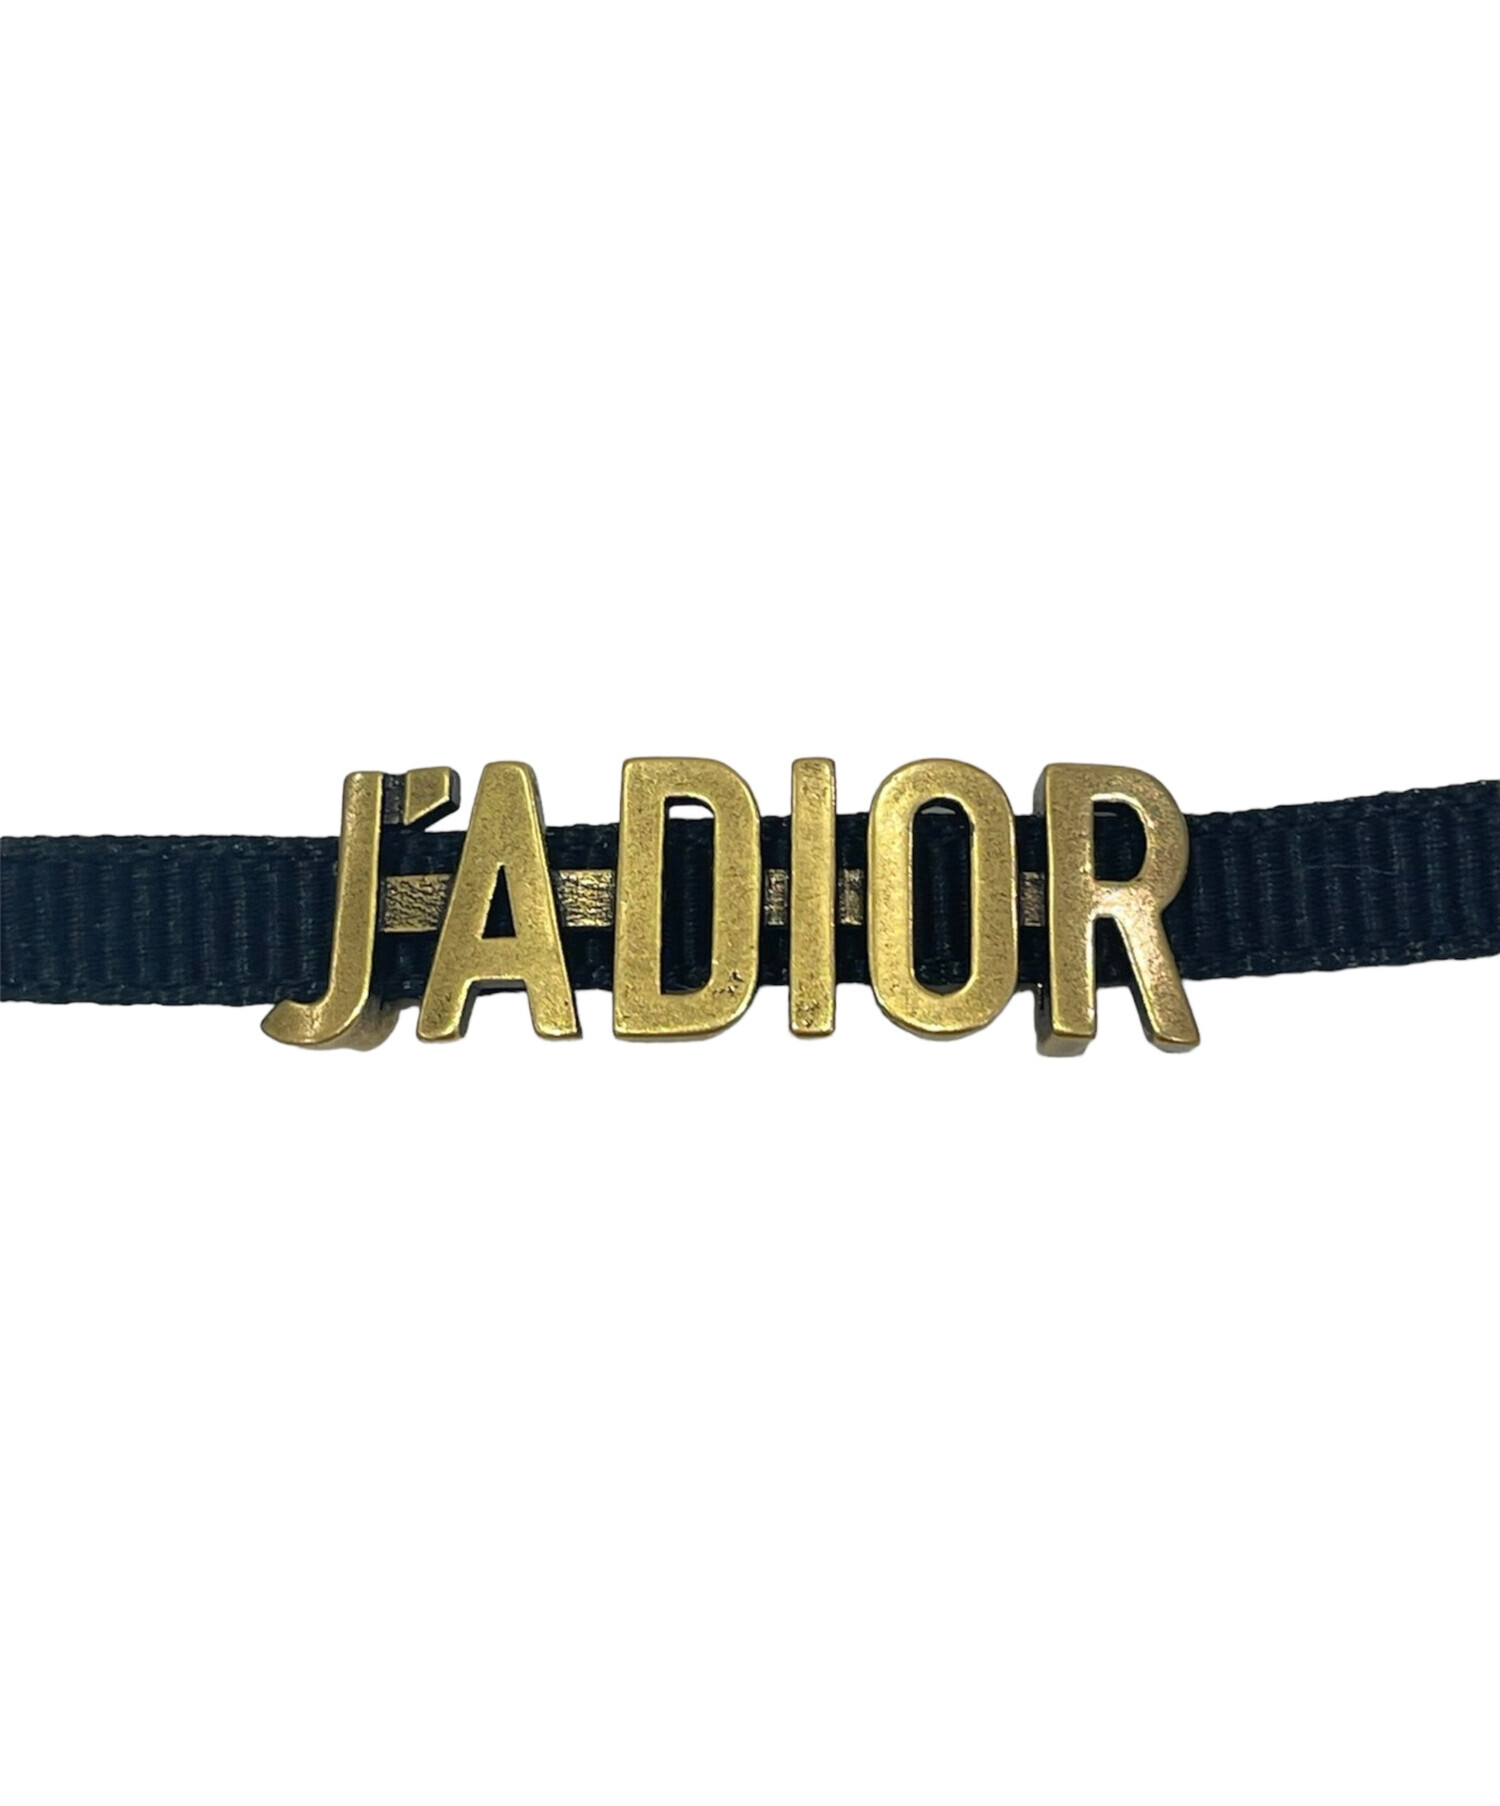 Christian Dior (クリスチャン ディオール) JADIOR チョーカー ゴールド×ブラック